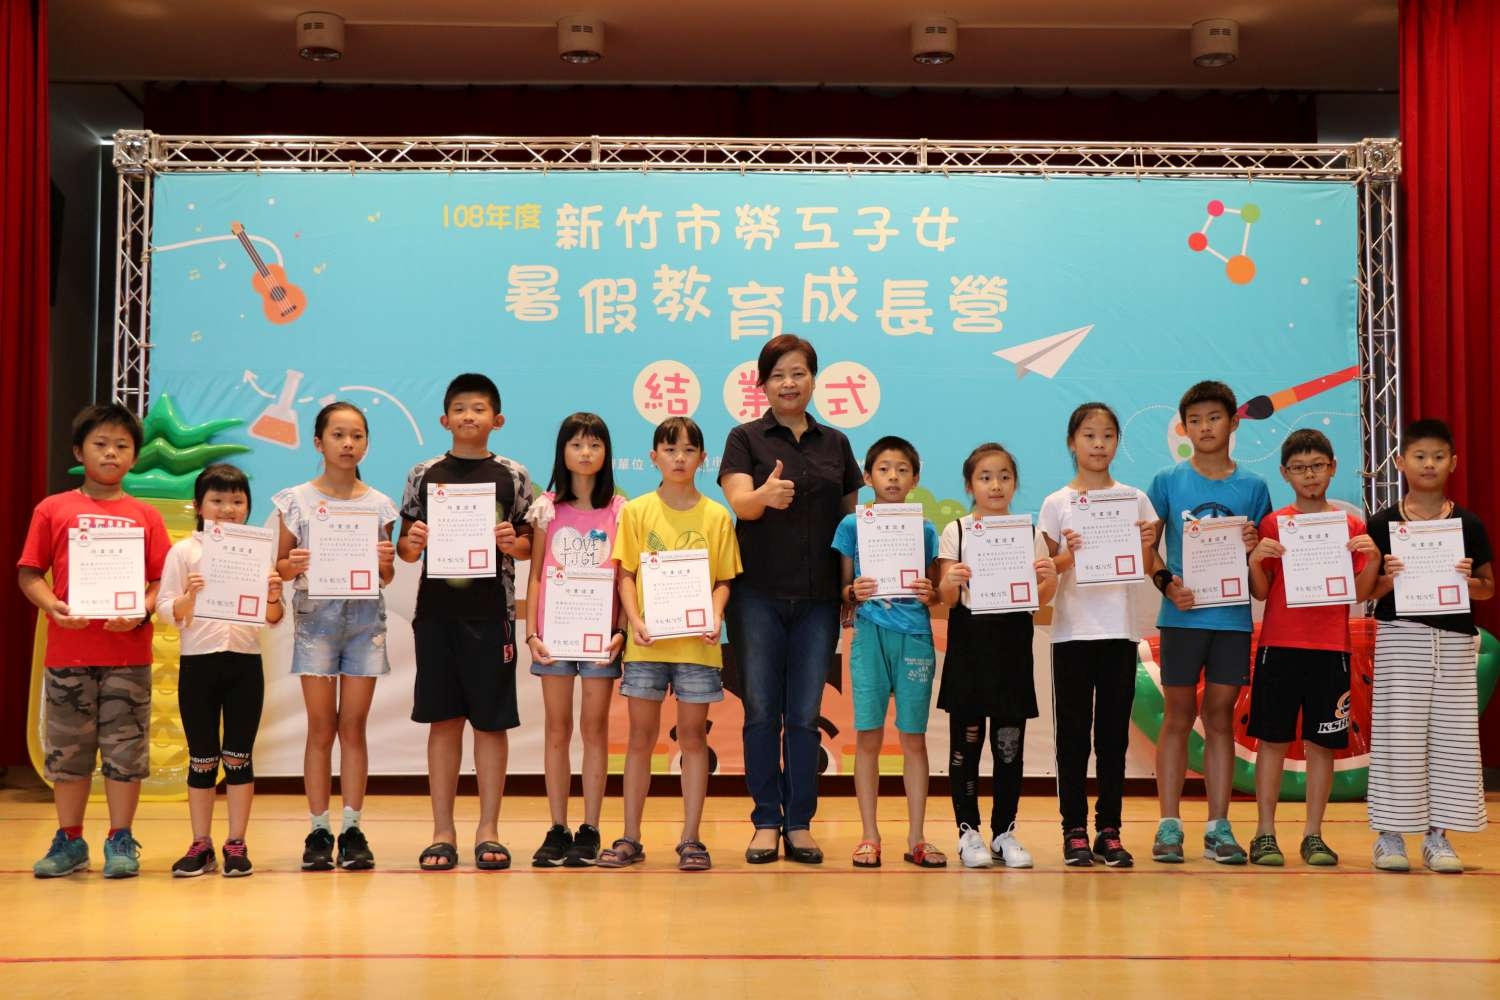 副市長沈慧虹頒發結業證書給小朋友們